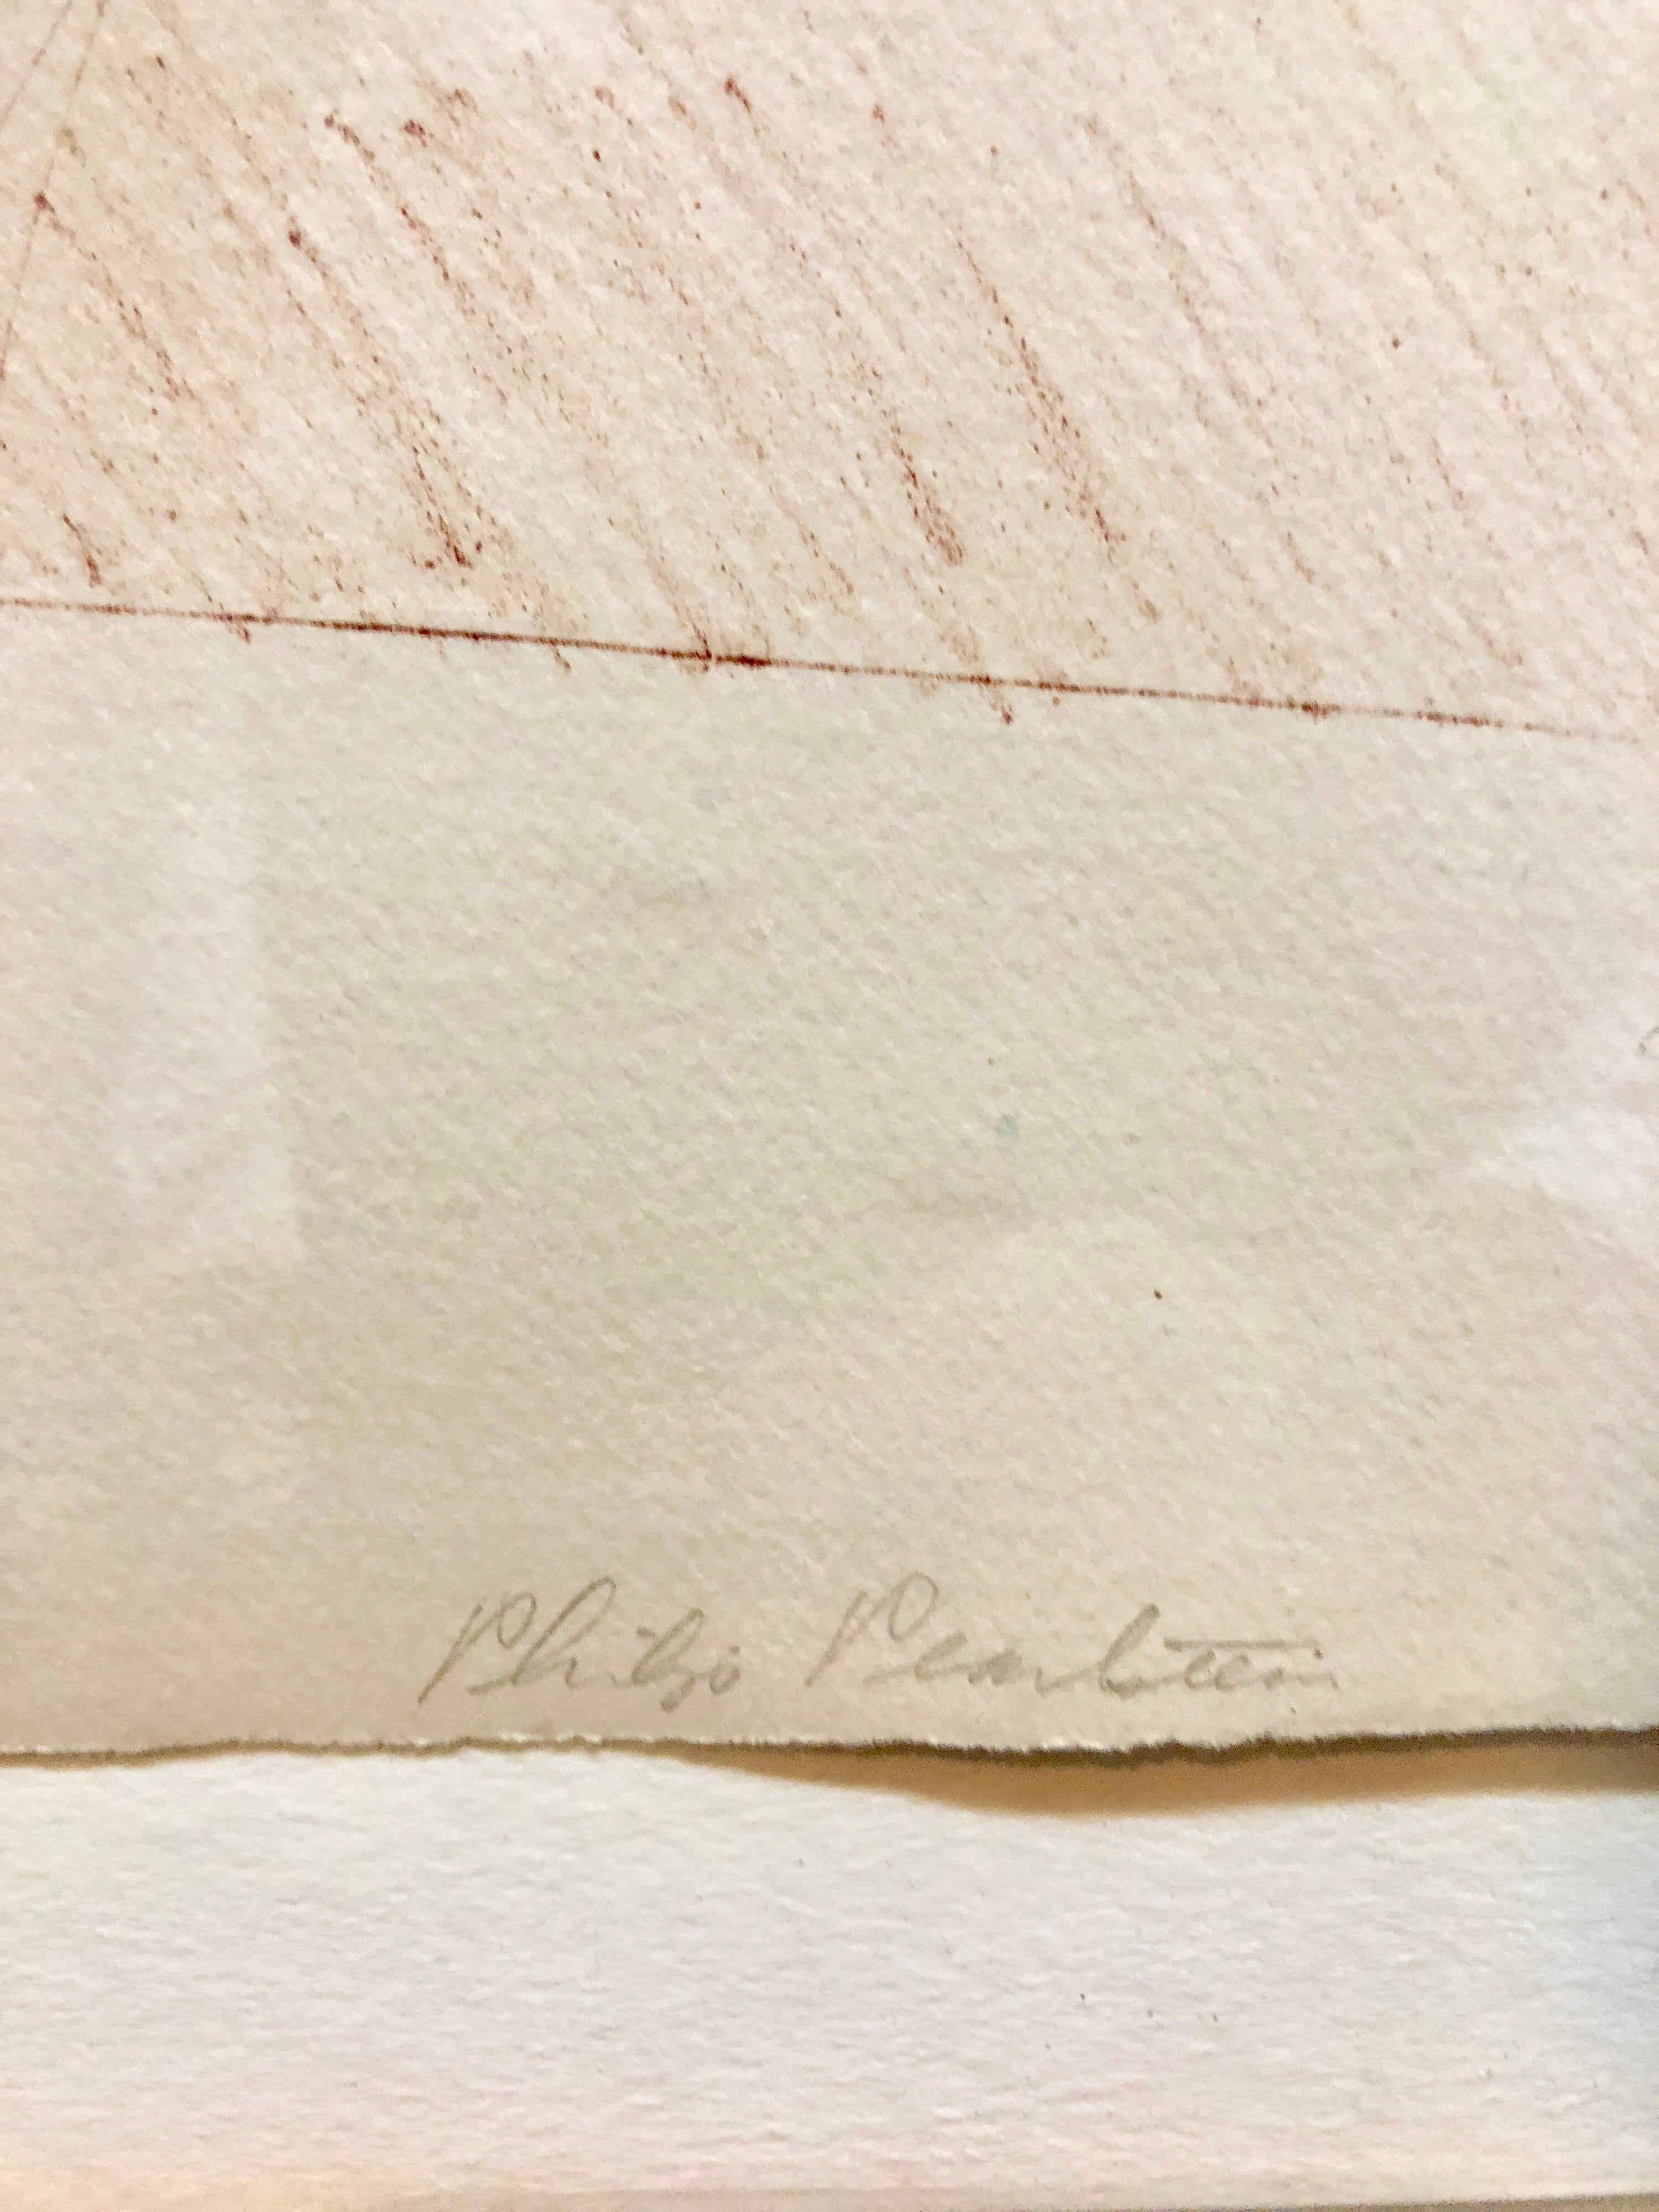 Fille en robe de ballerine, C.C. 1970
Lithographie en couleur imprimée sur papier vélin, signée au crayon et numérotée 22/75, avec le cachet de l'éditeur, Landfall Press, Chicago (ils ont publié une liste éclectique de nombreux artistes importants